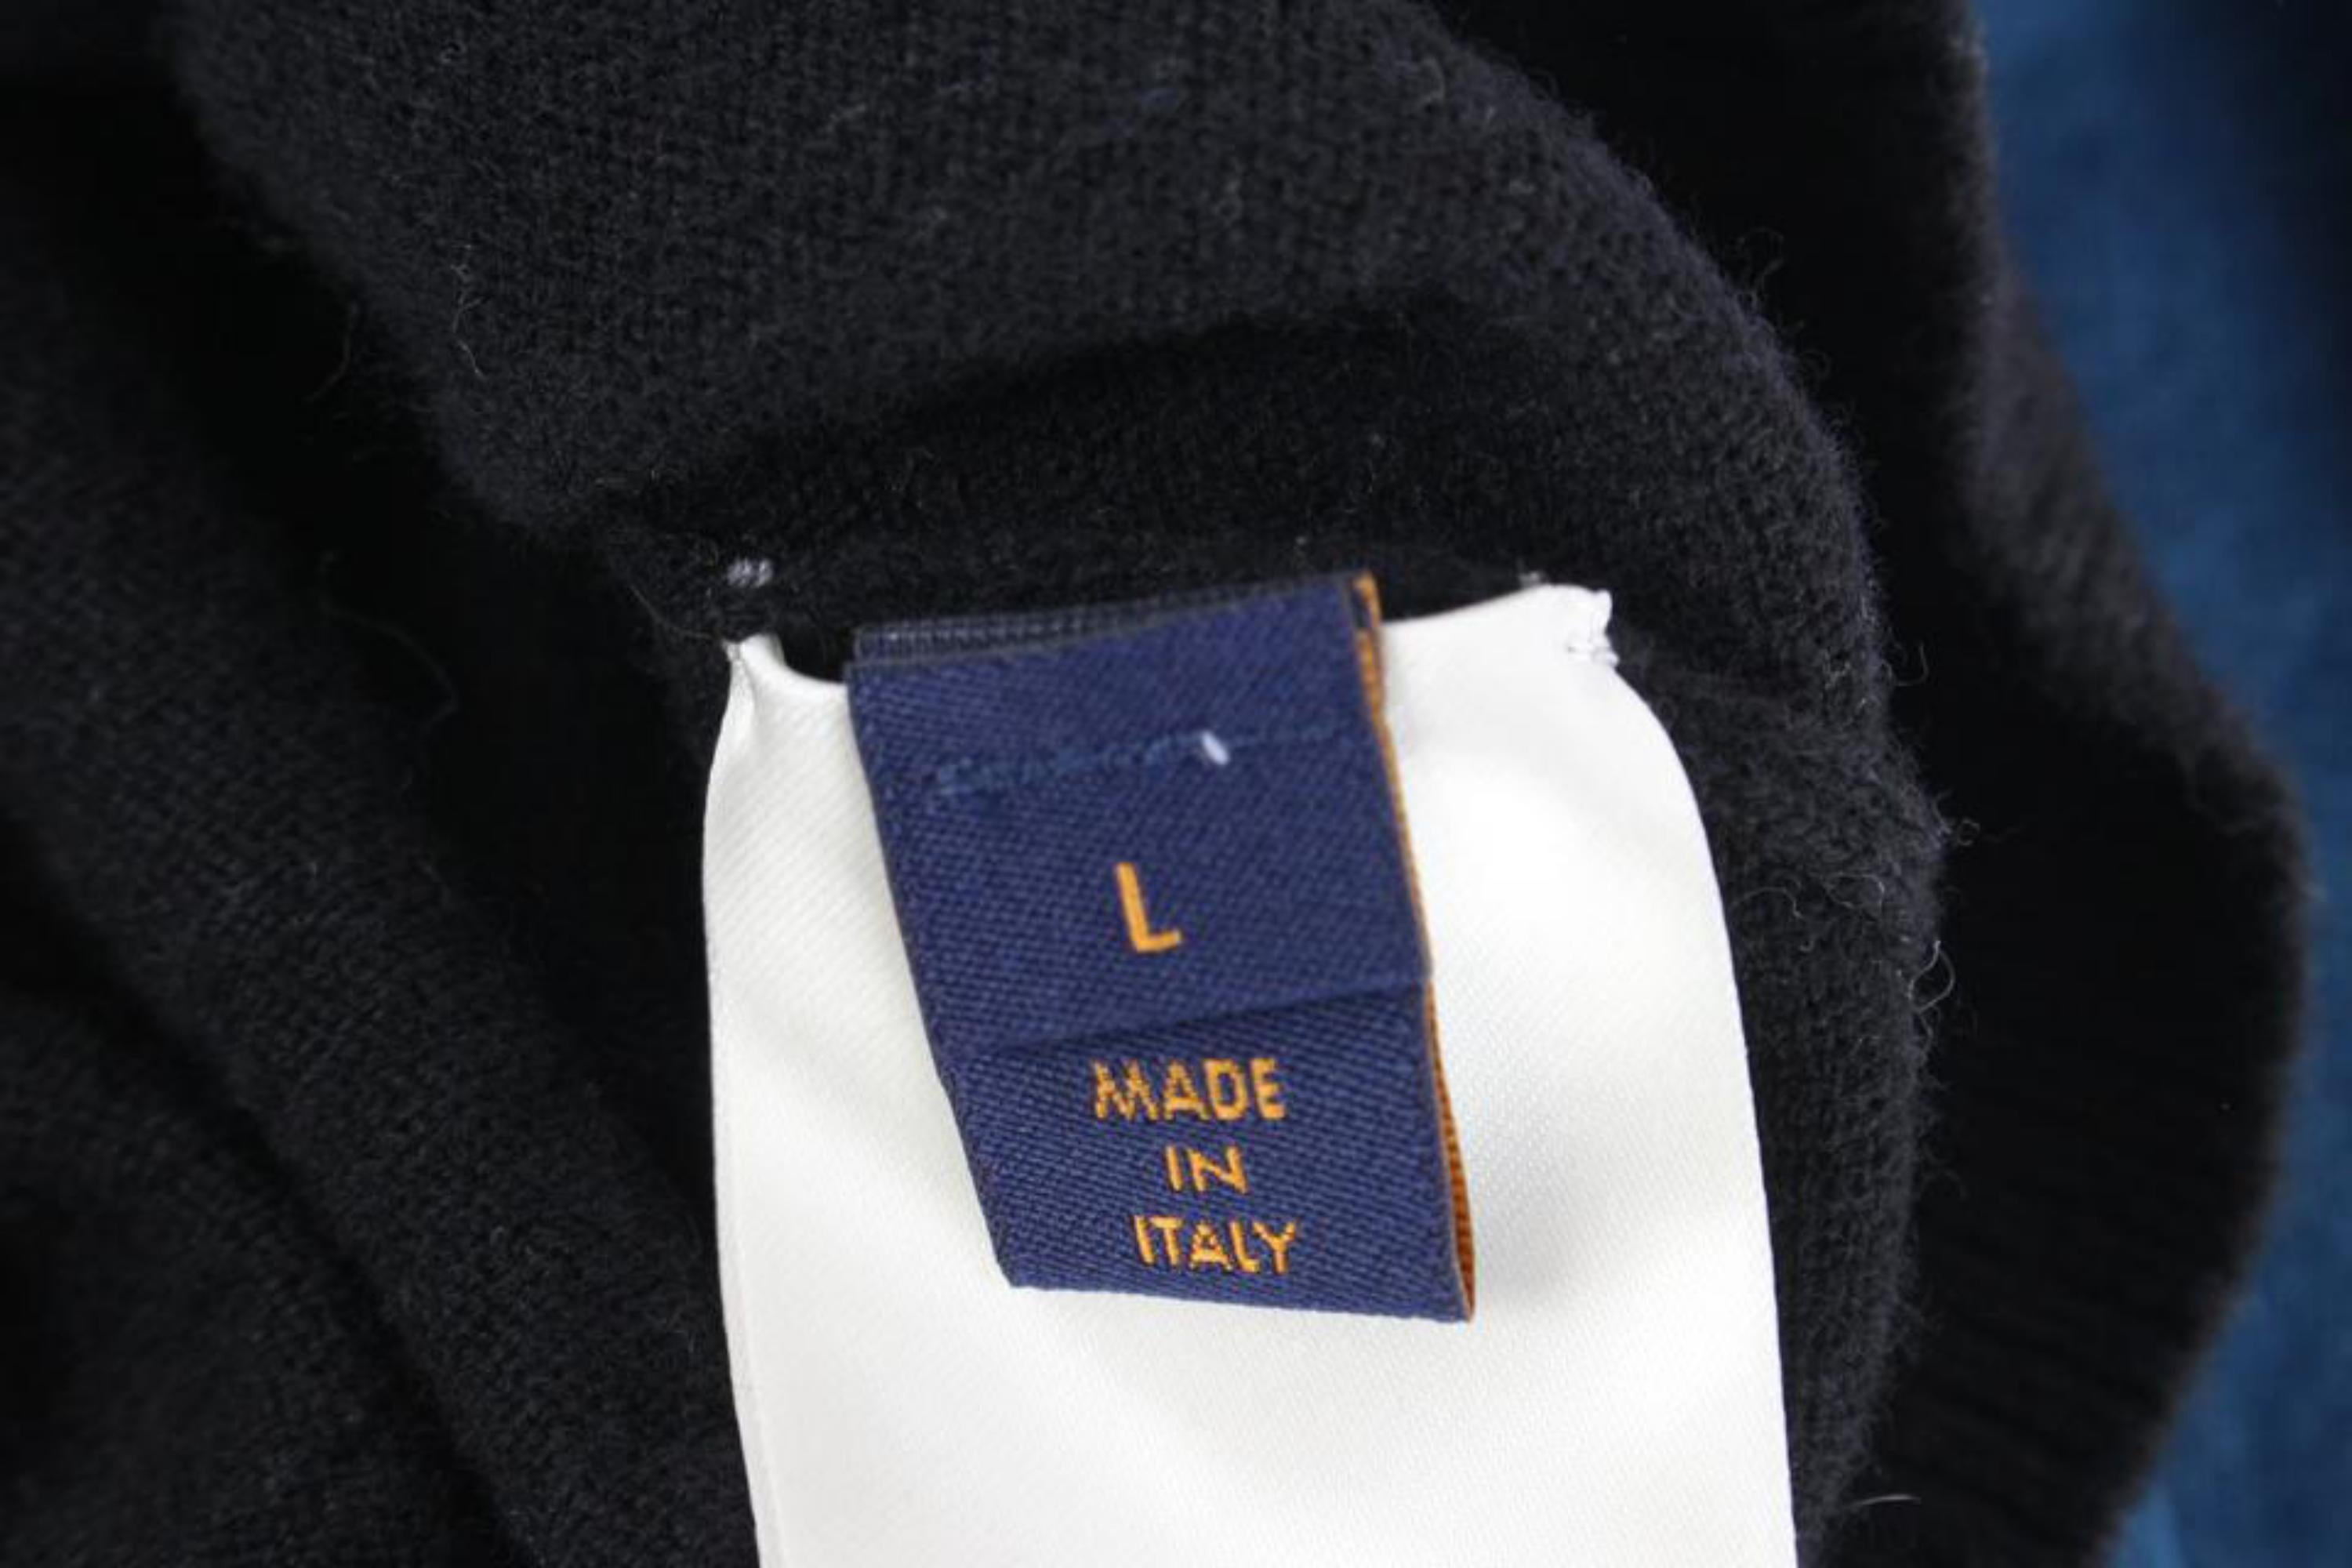 Louis Vuitton VIrgil Abloh Black x Blue Long Sleeve Sweater Shirt 3lz526s For Sale 3